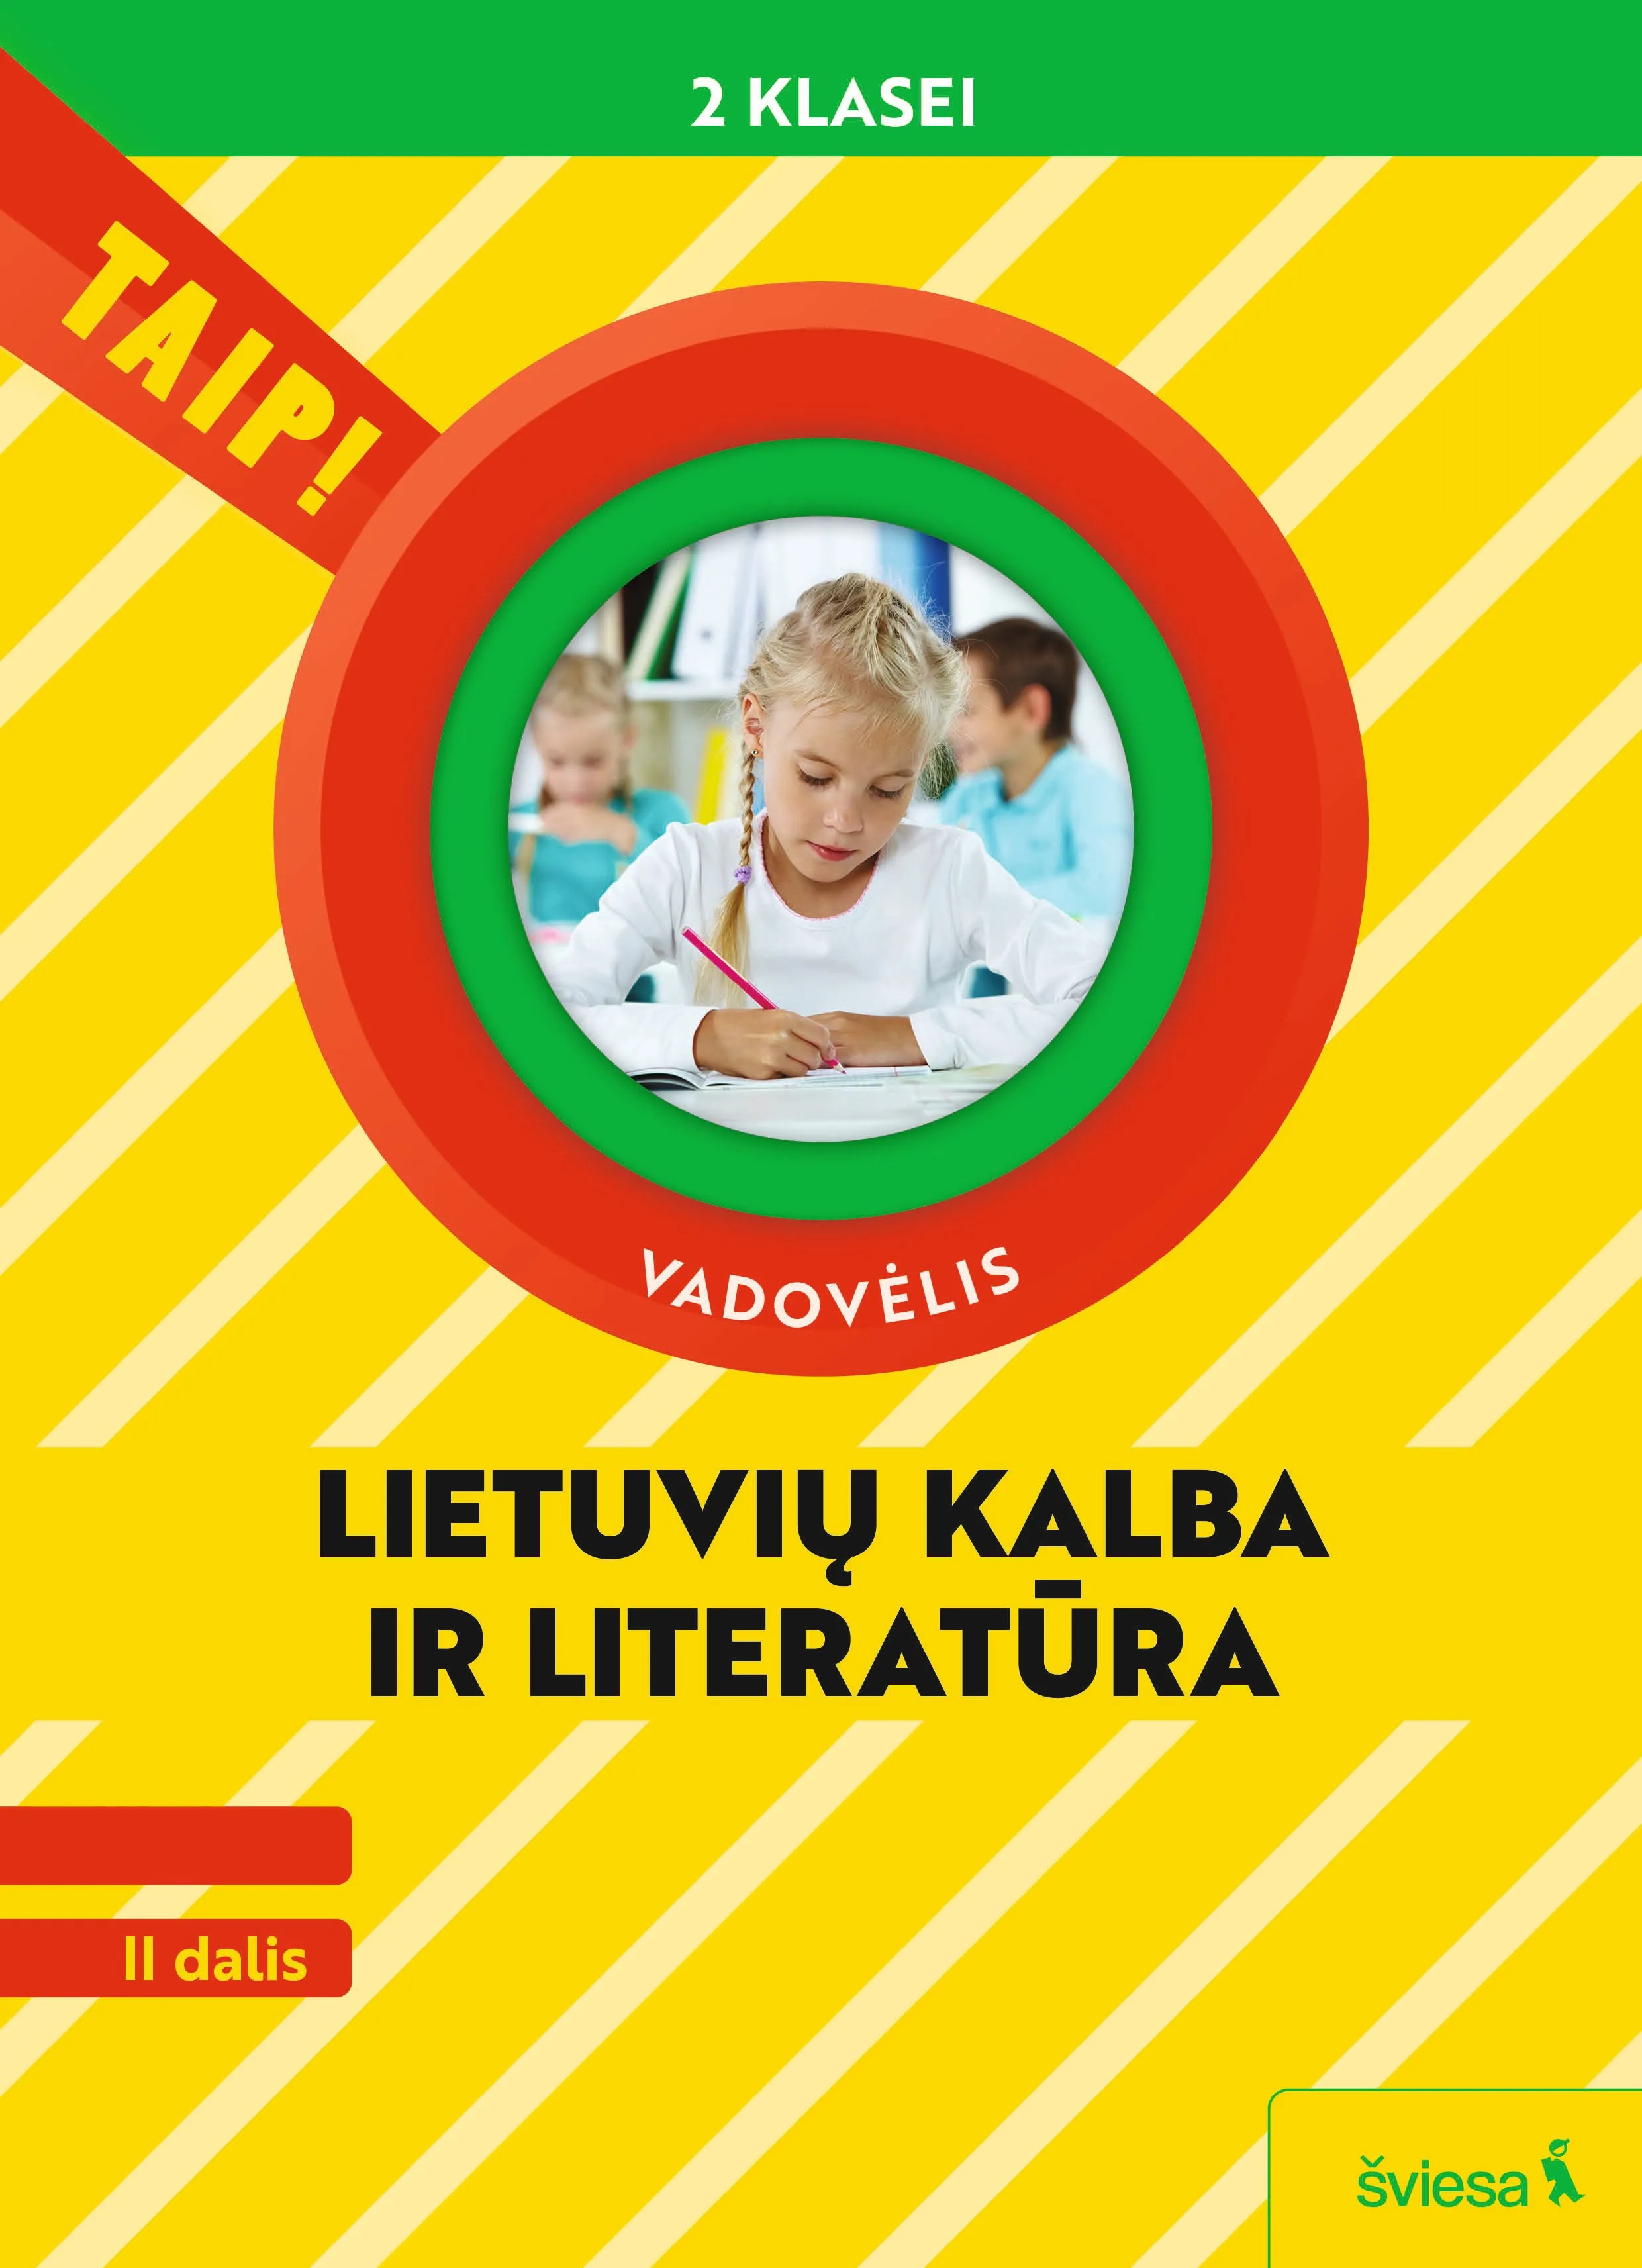 Lietuvių kalba ir literatūra, vadovėlis 2 klasei, II dalis (Taip!)